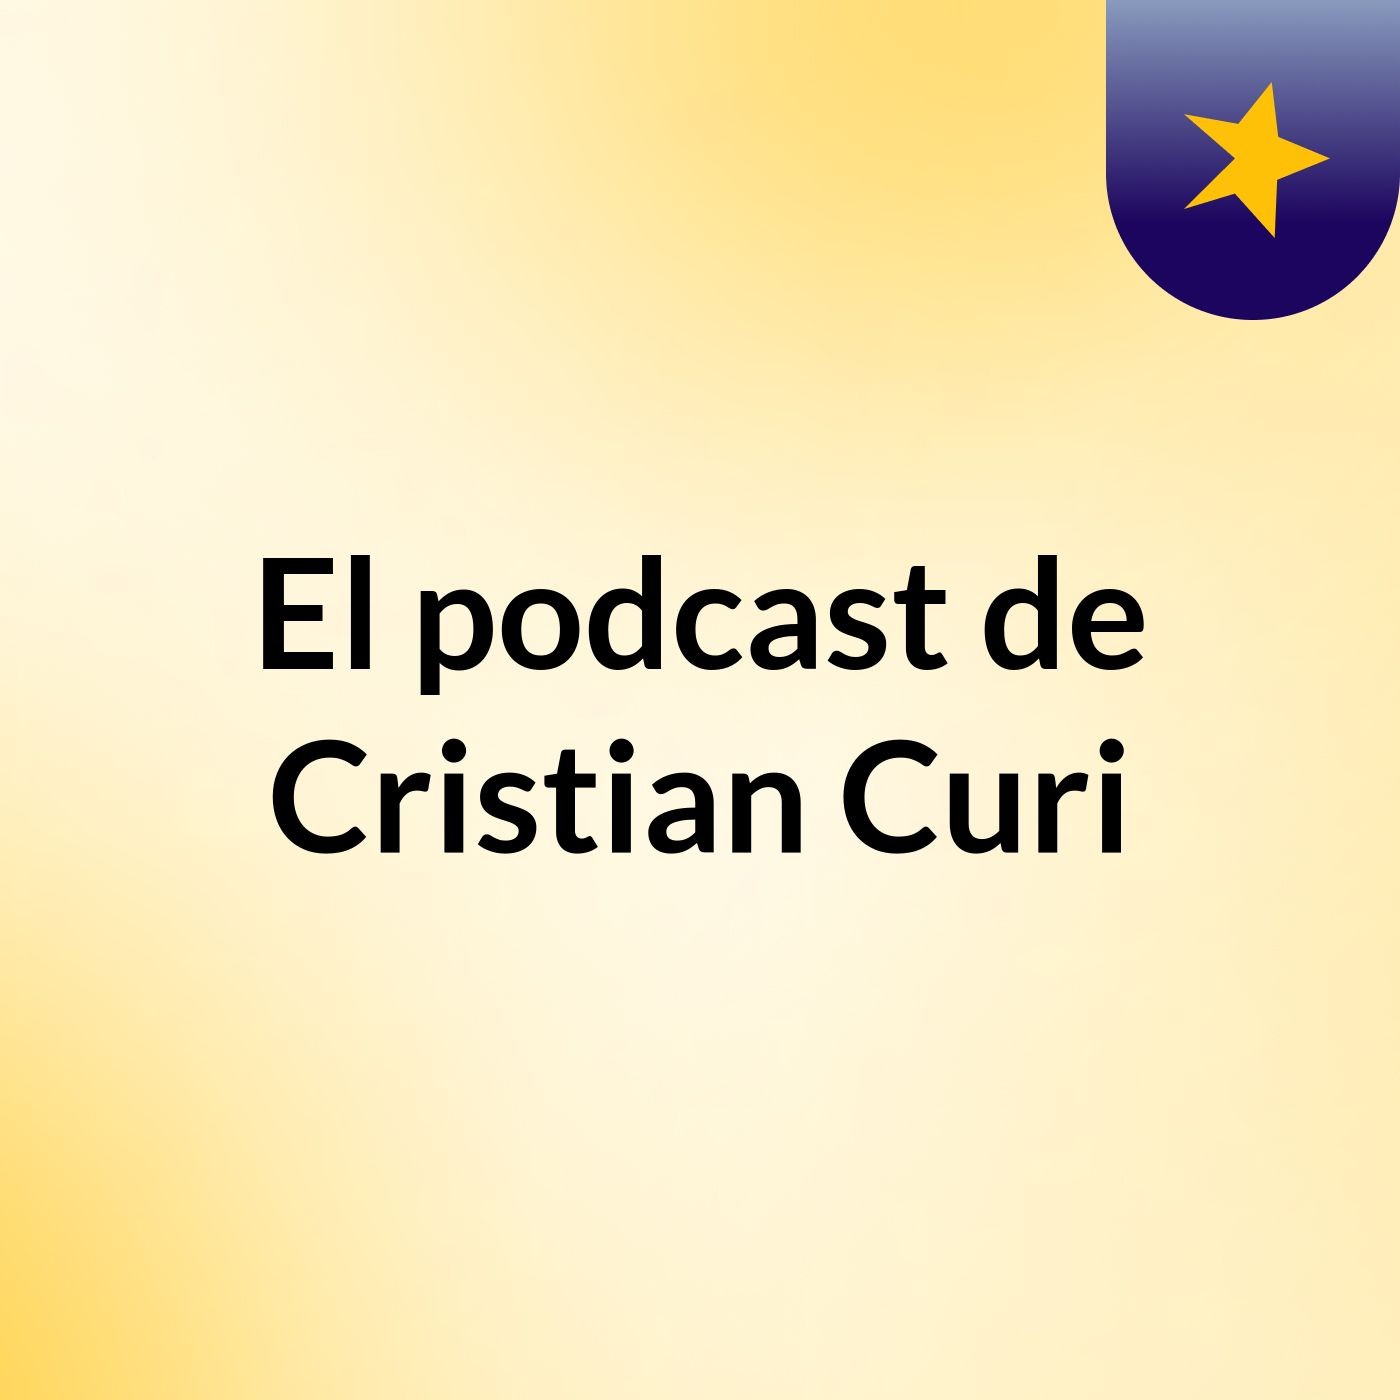 El podcast de Cristian Curi